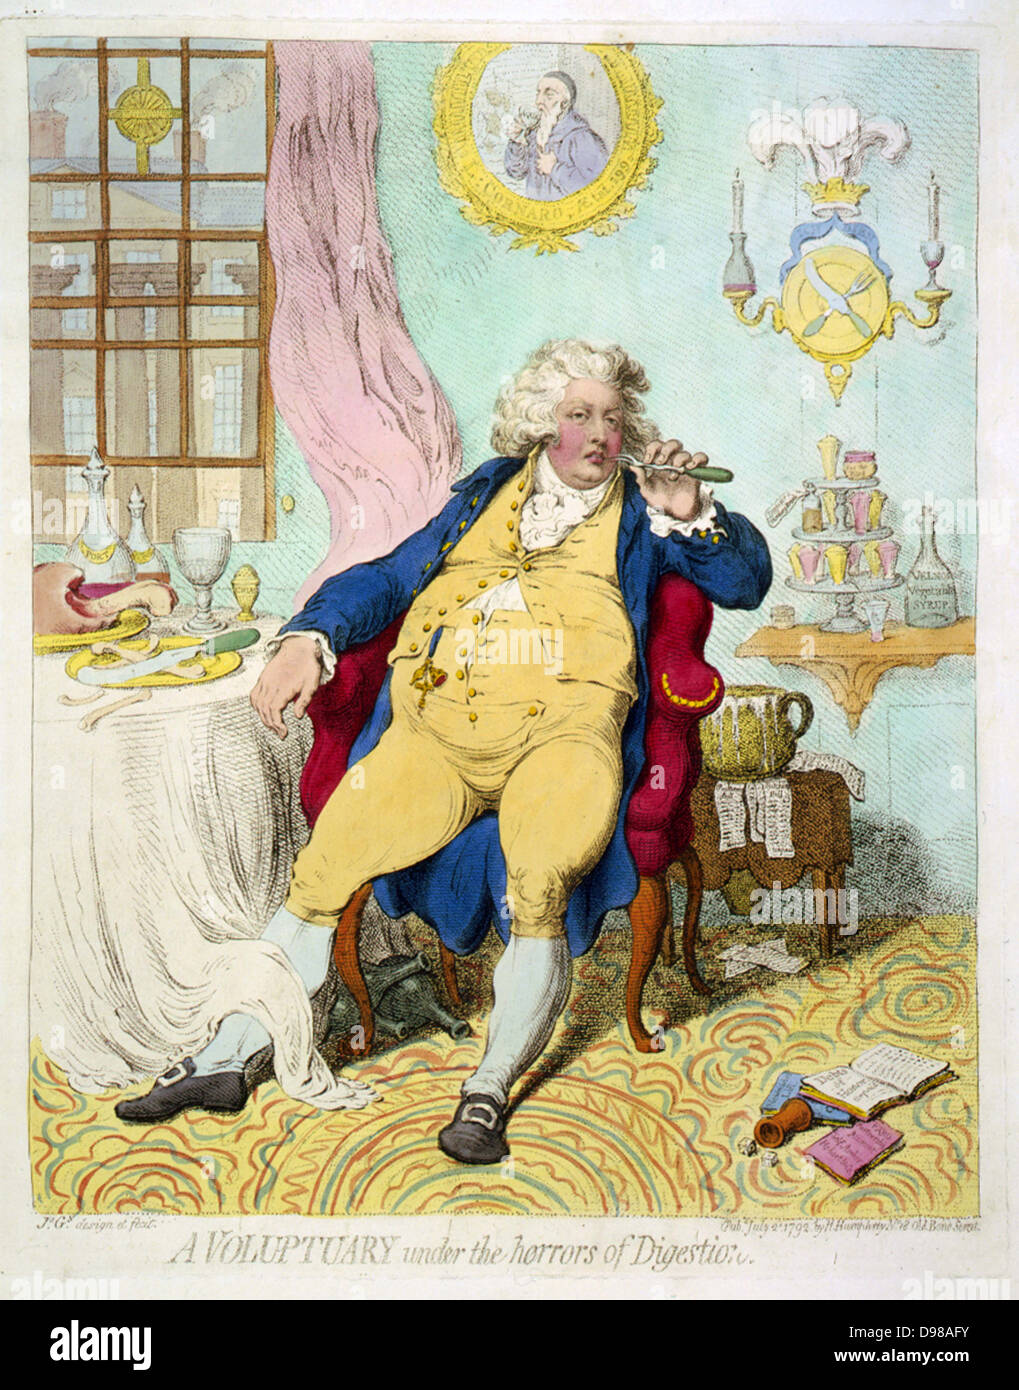 Ein voluptuary unter dem Schrecken der Verdauung 'George IV (Prince Regent 1811-1820), als Prinz von Wales, seine Extravaganz, der Grobheit und Genusssucht angezeigt. Cartoon von James Gilray (1756-1815) veröffentlicht in London 1792. Stockfoto